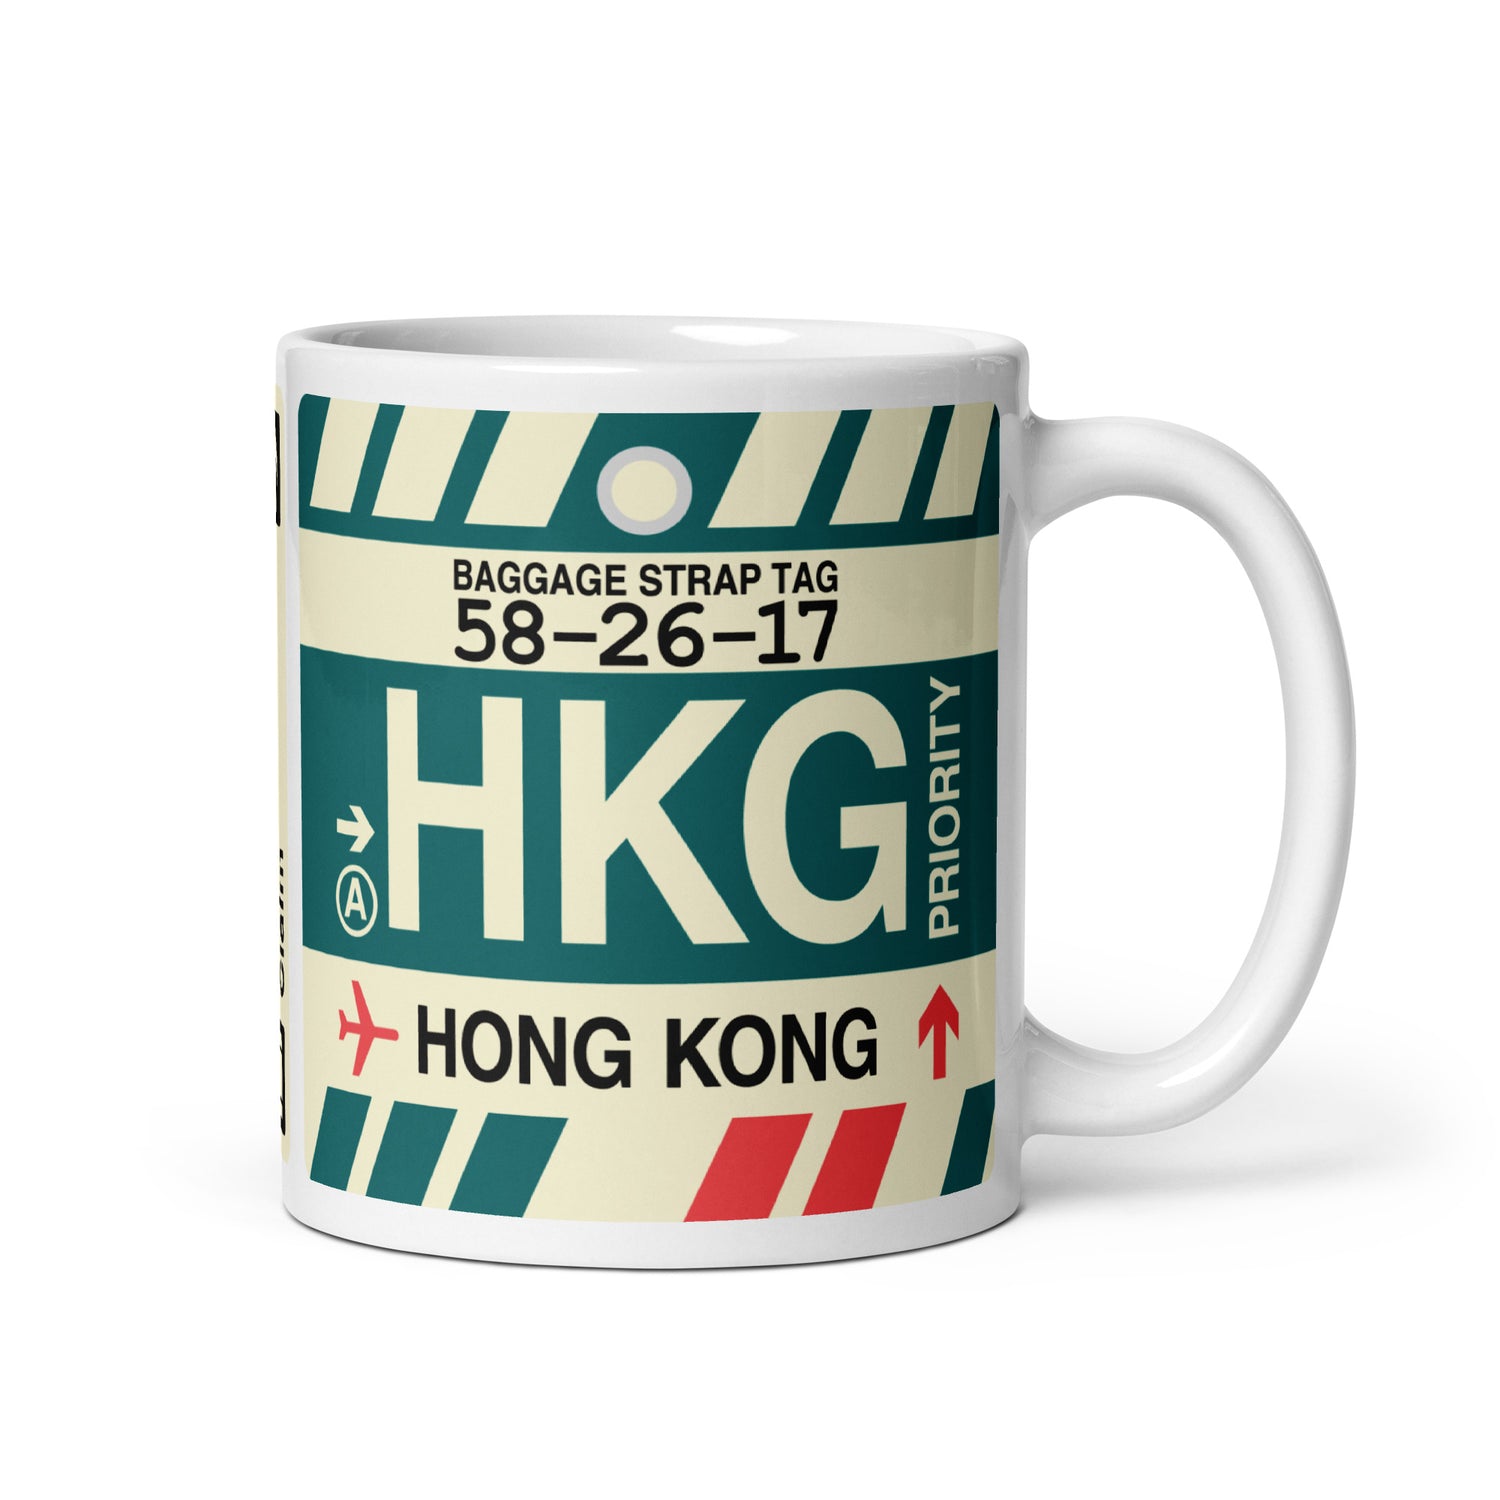 Hong Kong China Coffee Mugs and Water Bottles • HKG Airport Code